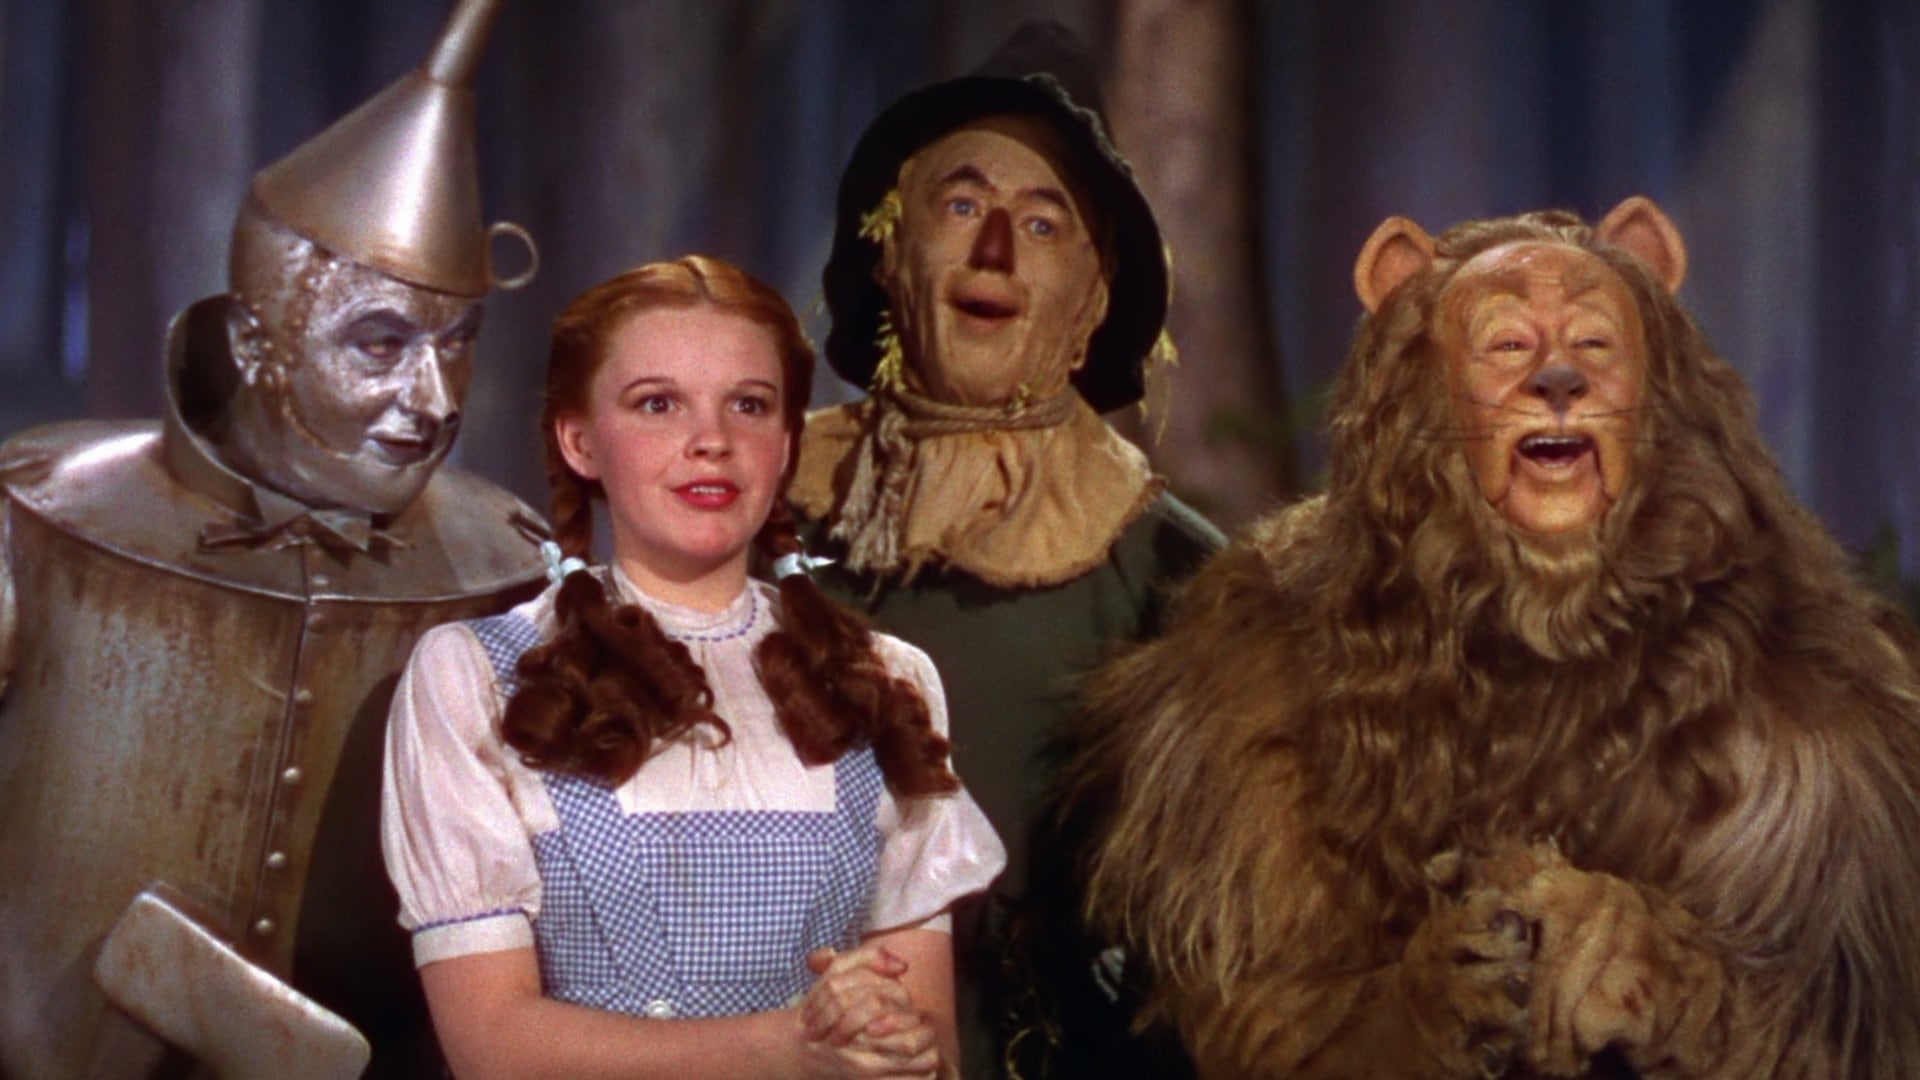 Image from the movie "O Feiticeiro de Oz"